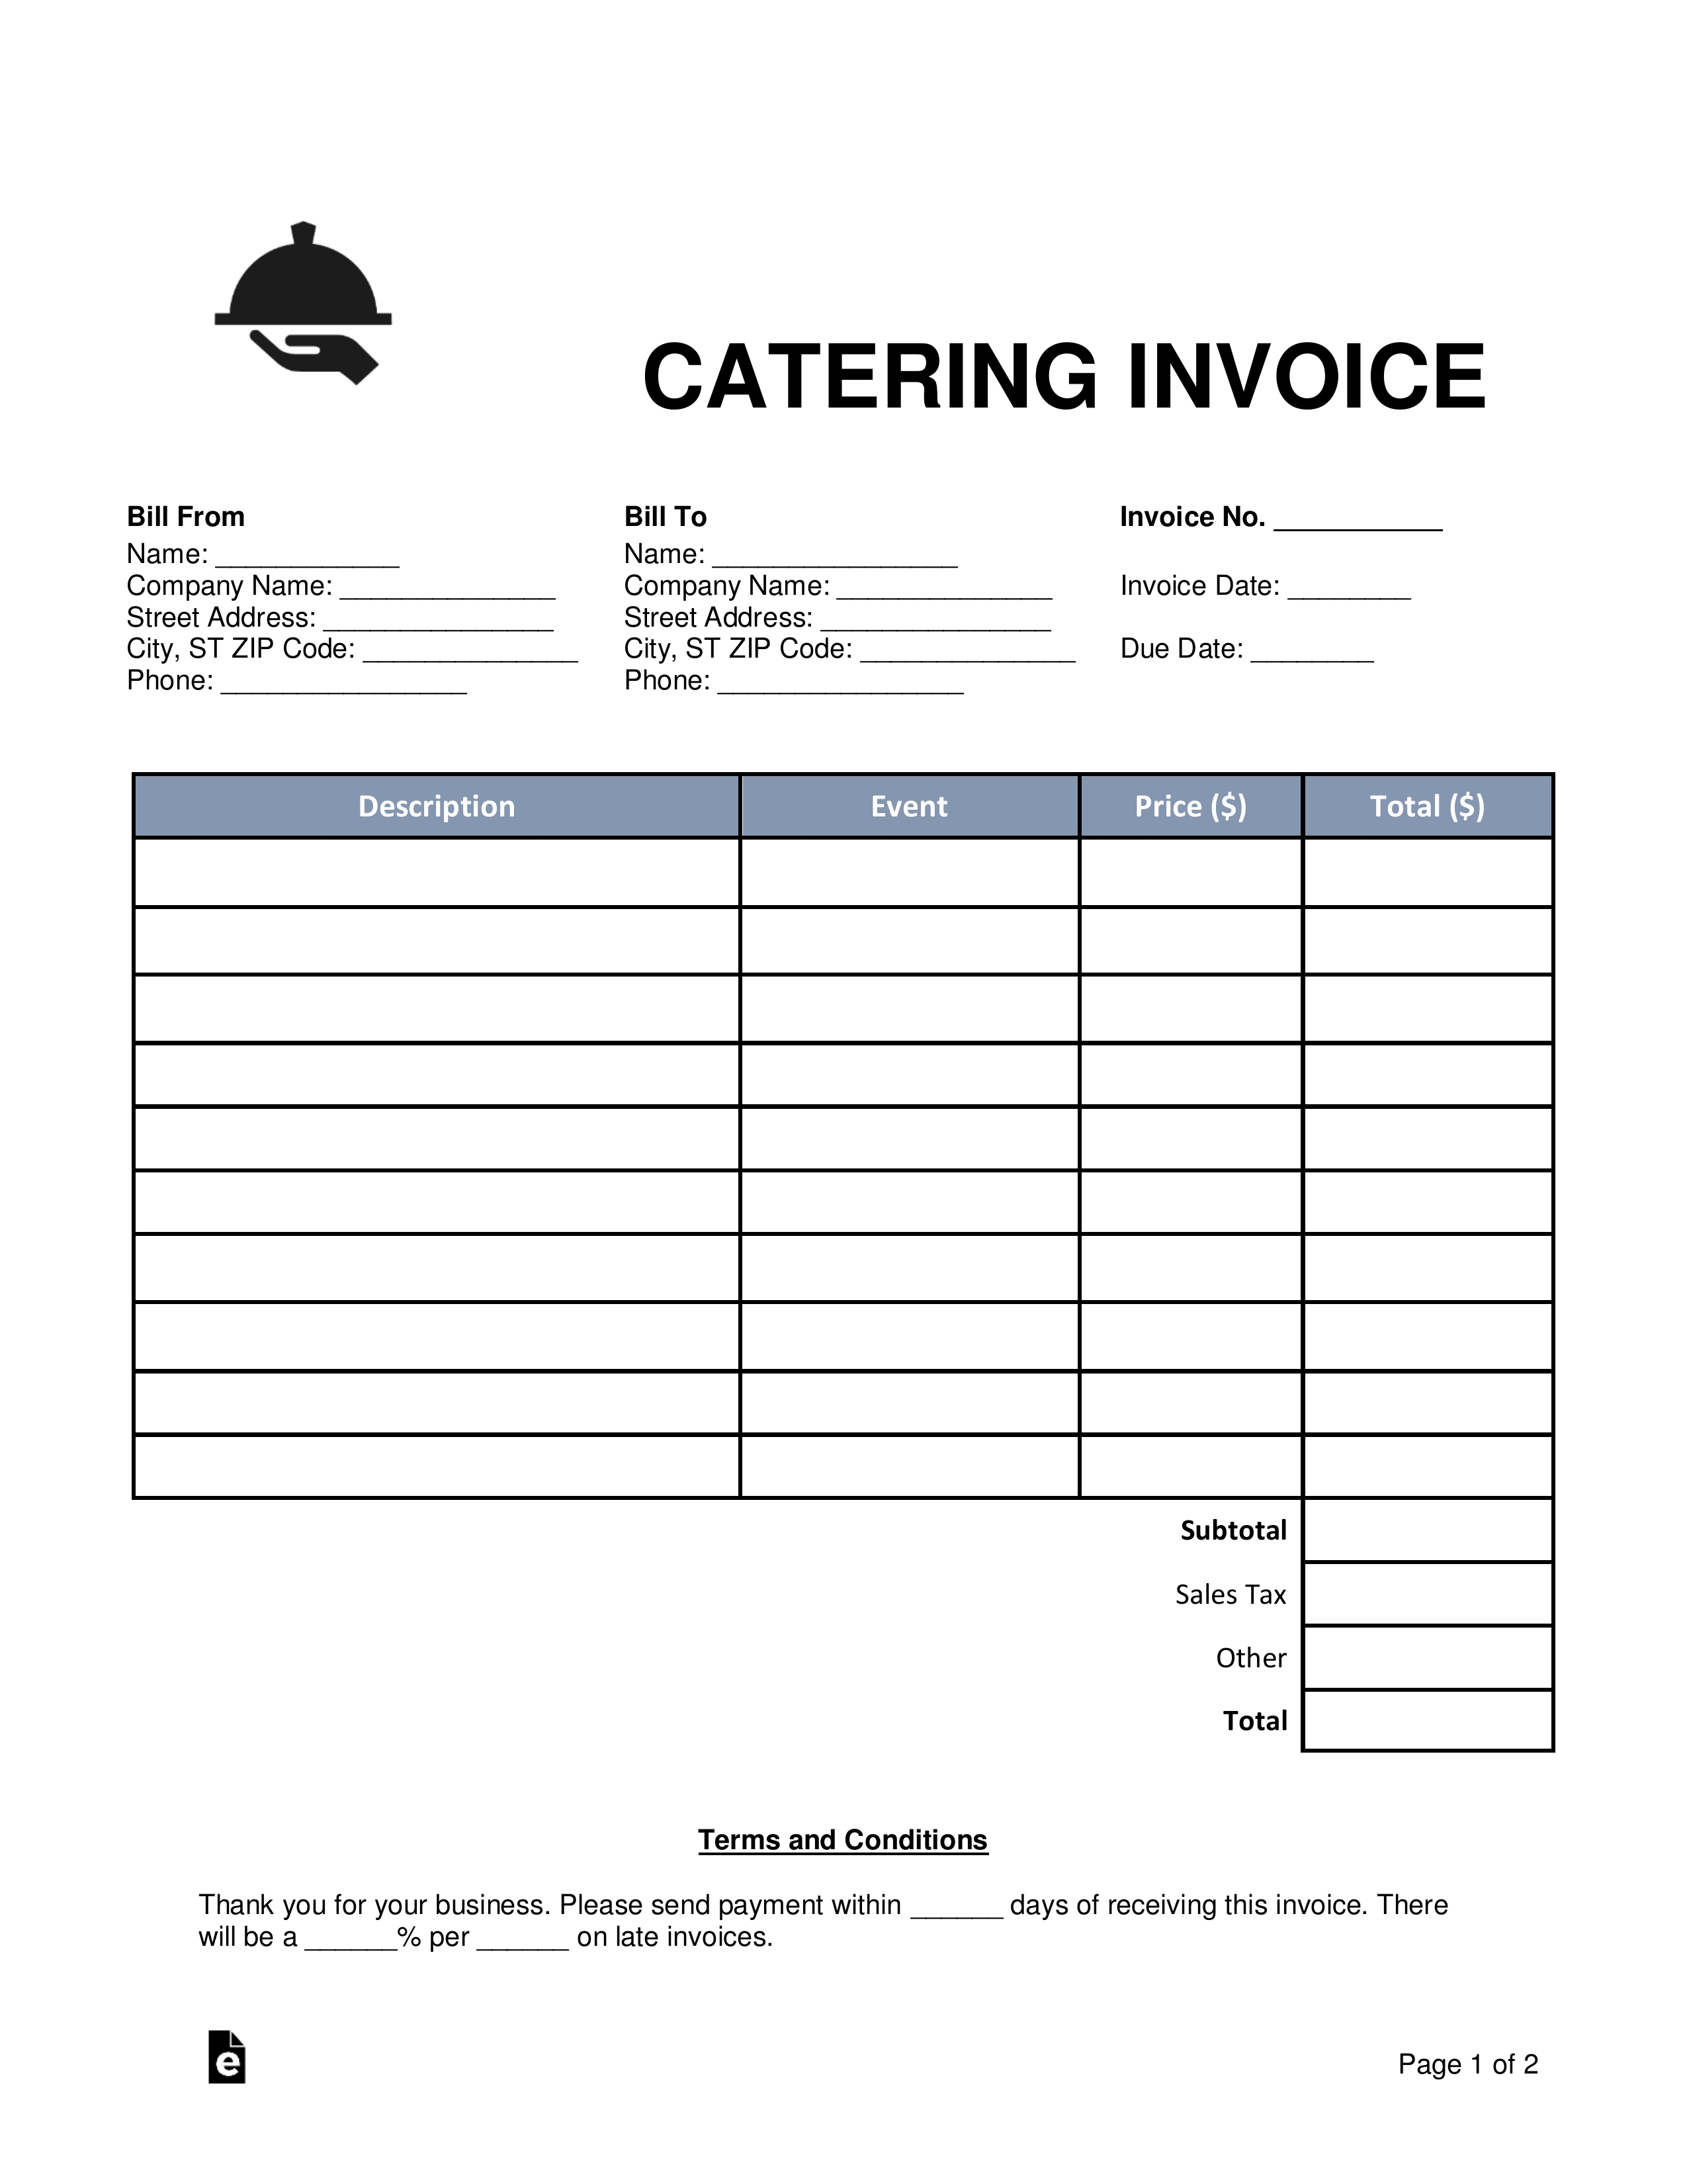 sample catering invoice hamlersd7 sample of catering invoice